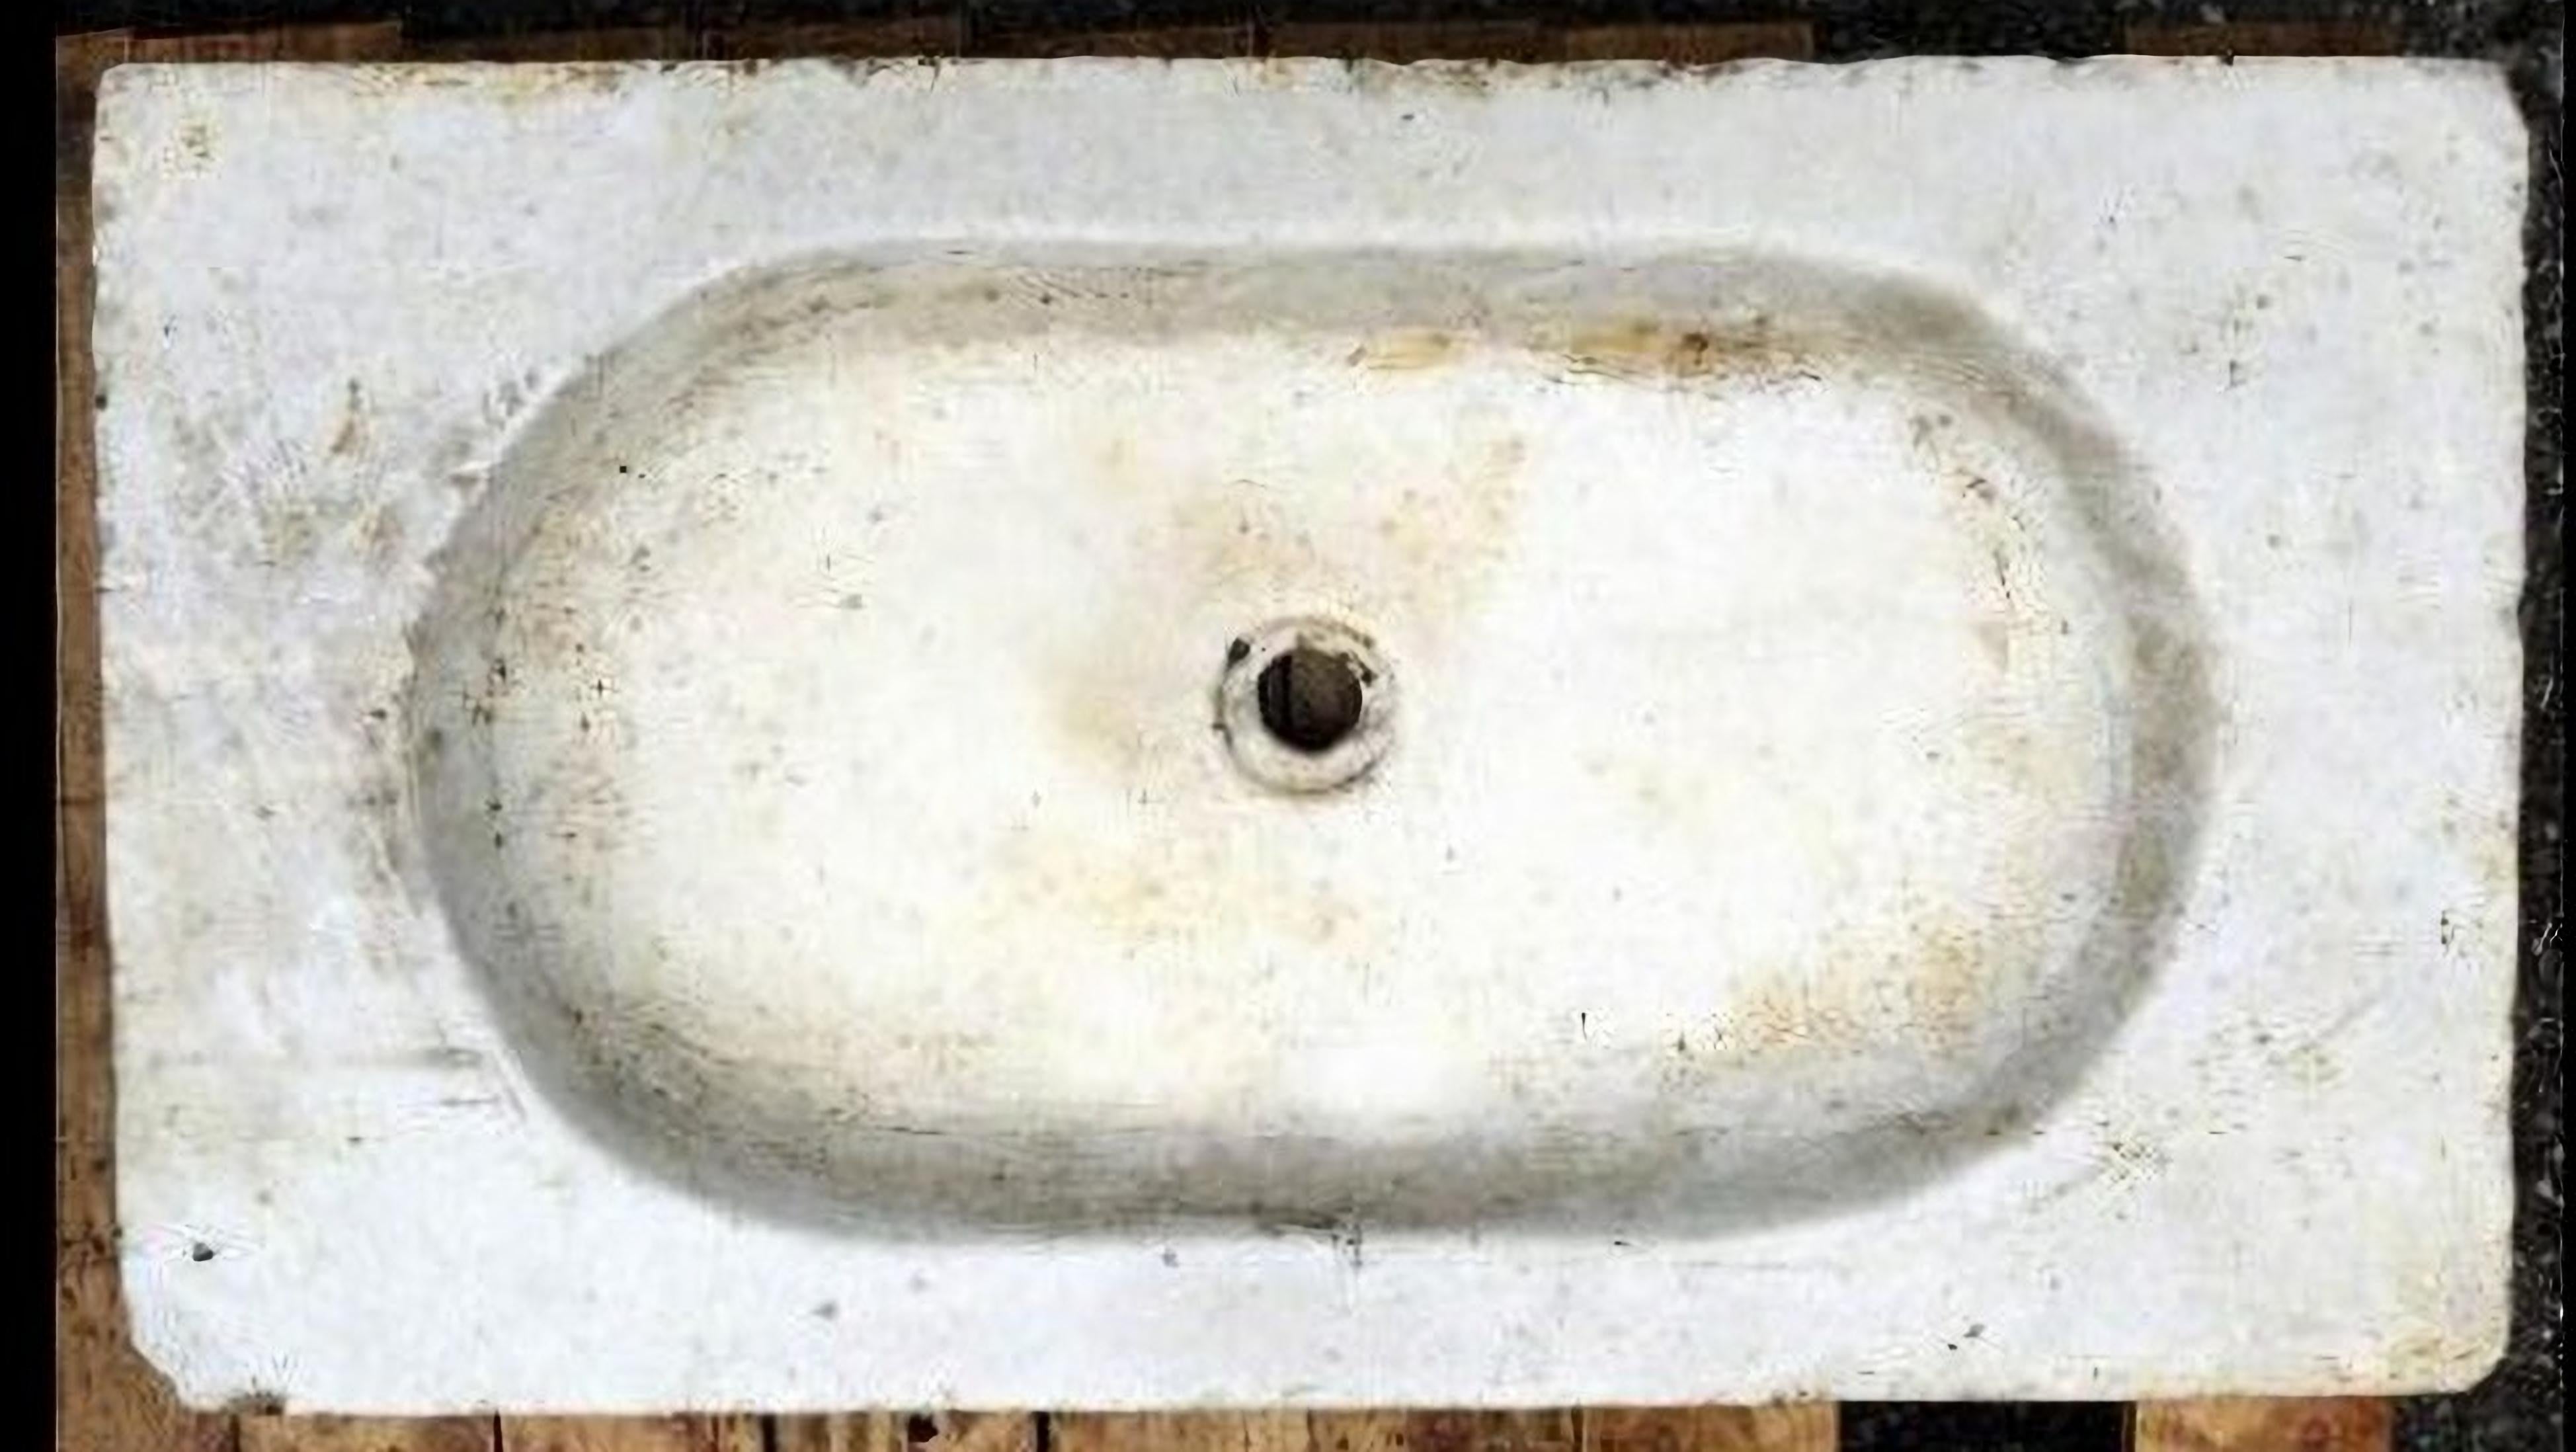 ANTIQUE ORIGINAL ITALIAN CARRARA MARBLE SINK begann mit dem 20. Jahrhundert
Italien
Originales antikes Waschbecken aus weißem Marmor.
Abmessungen des Schalllochs: 42cm x 33cm x 4cm.
ursprünglicher Zustand
BREITE 57 cm
LÄNGE 32 cm
DICKTHEIT 8 cm
